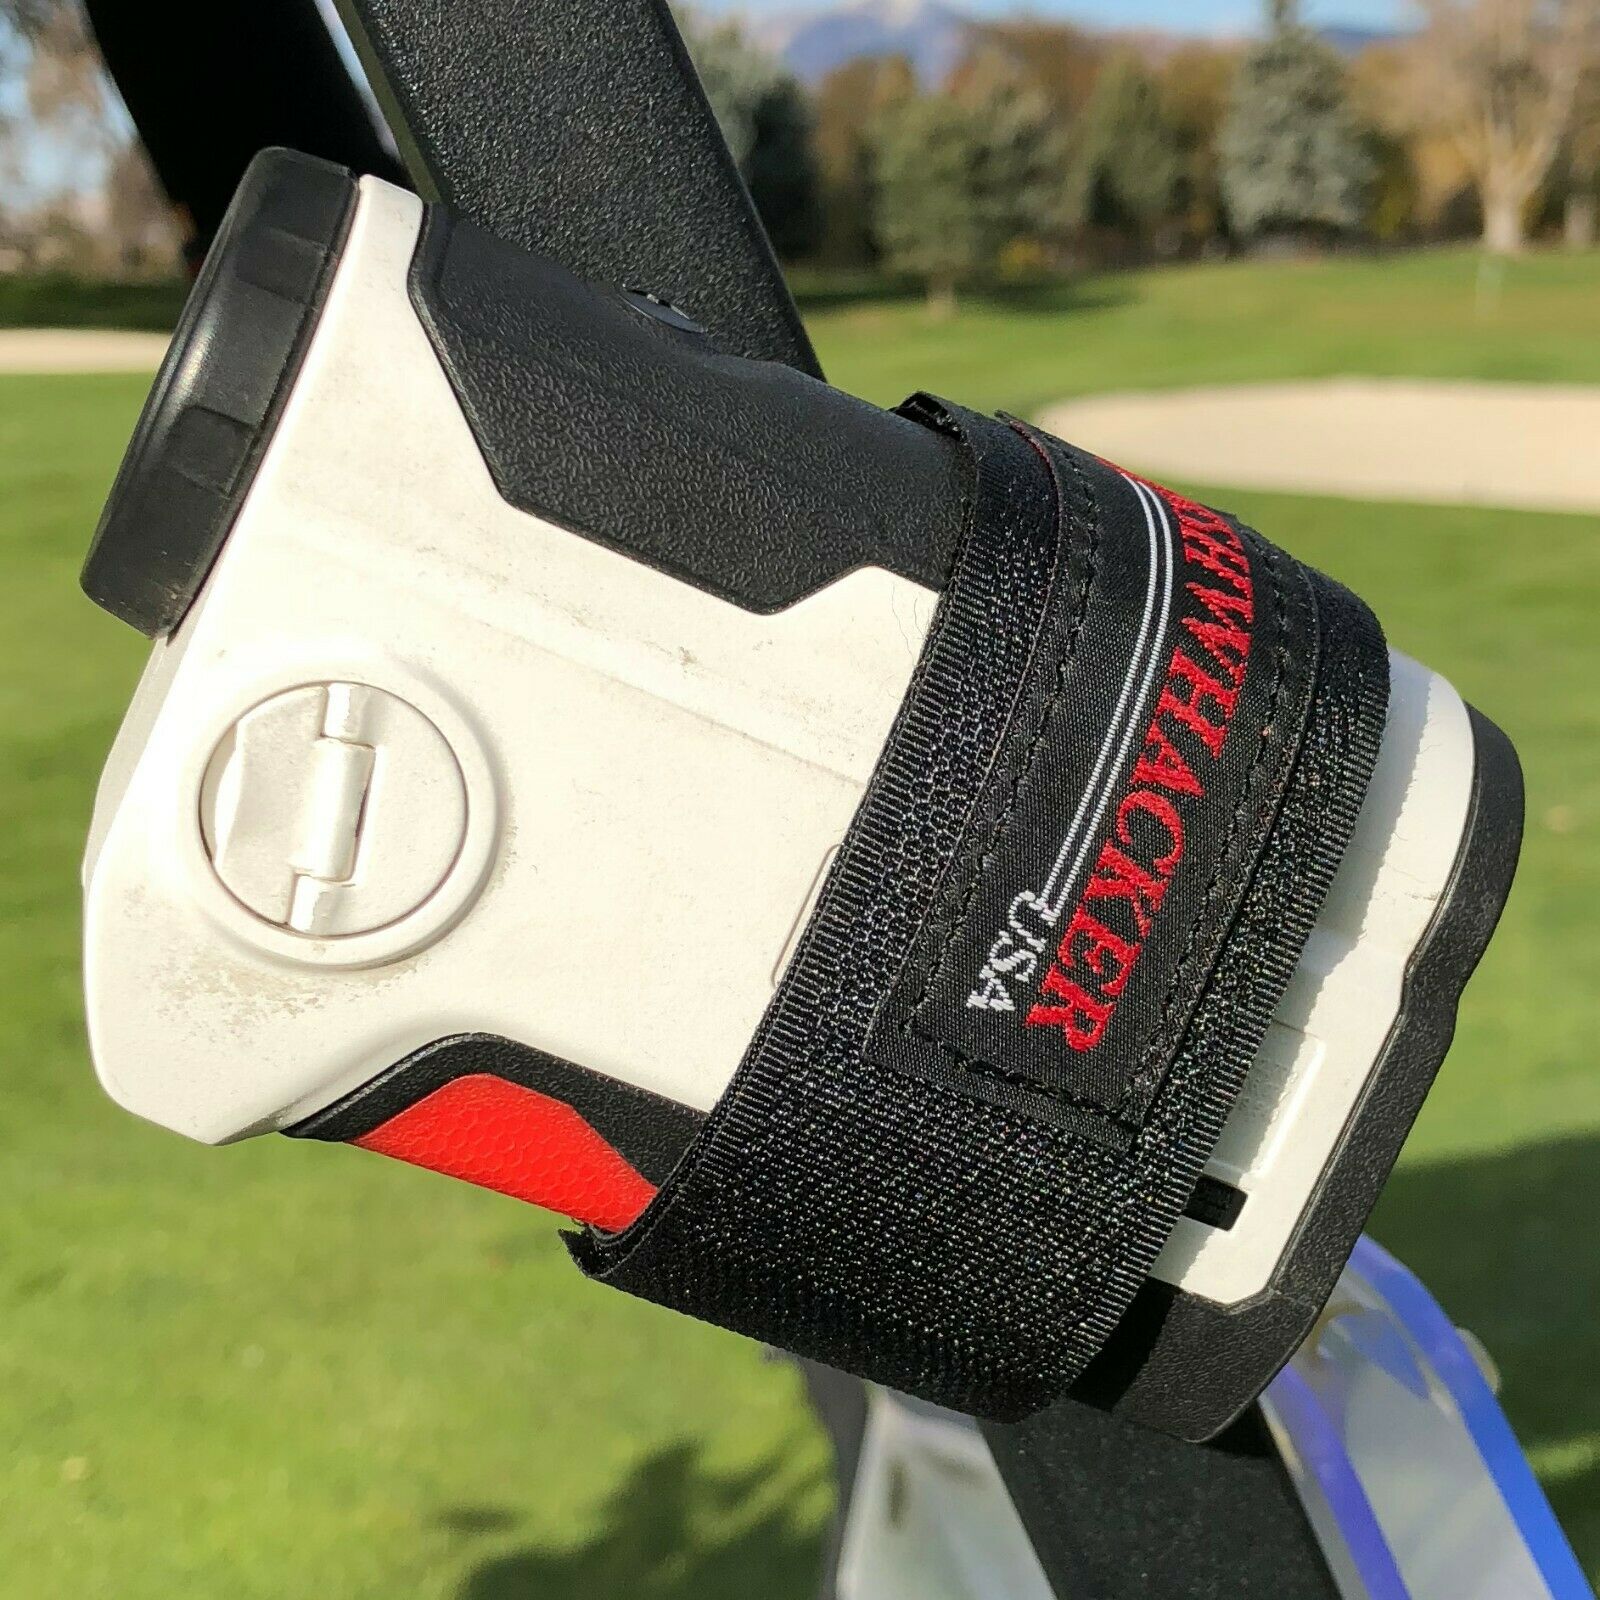 Magnetic Rangefinder Strap For Golf Cart Range Finder Holder Case Mount Stick